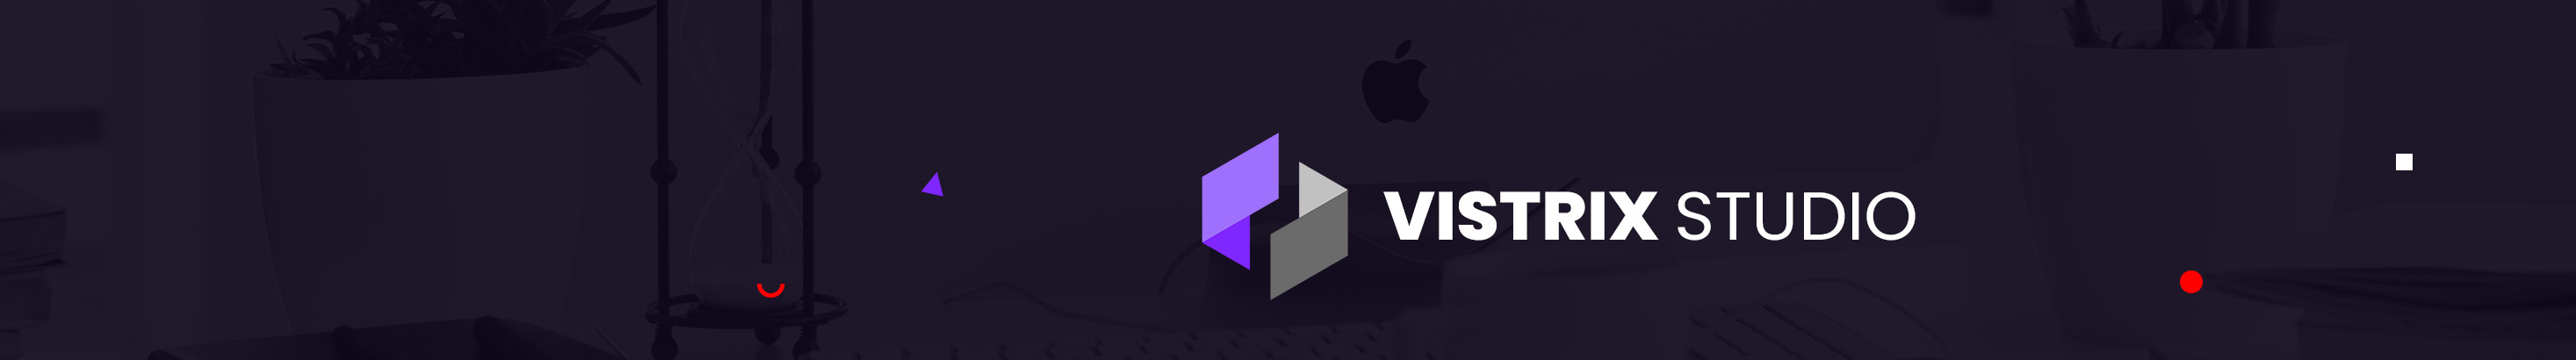 Vistrix Studio's profile banner